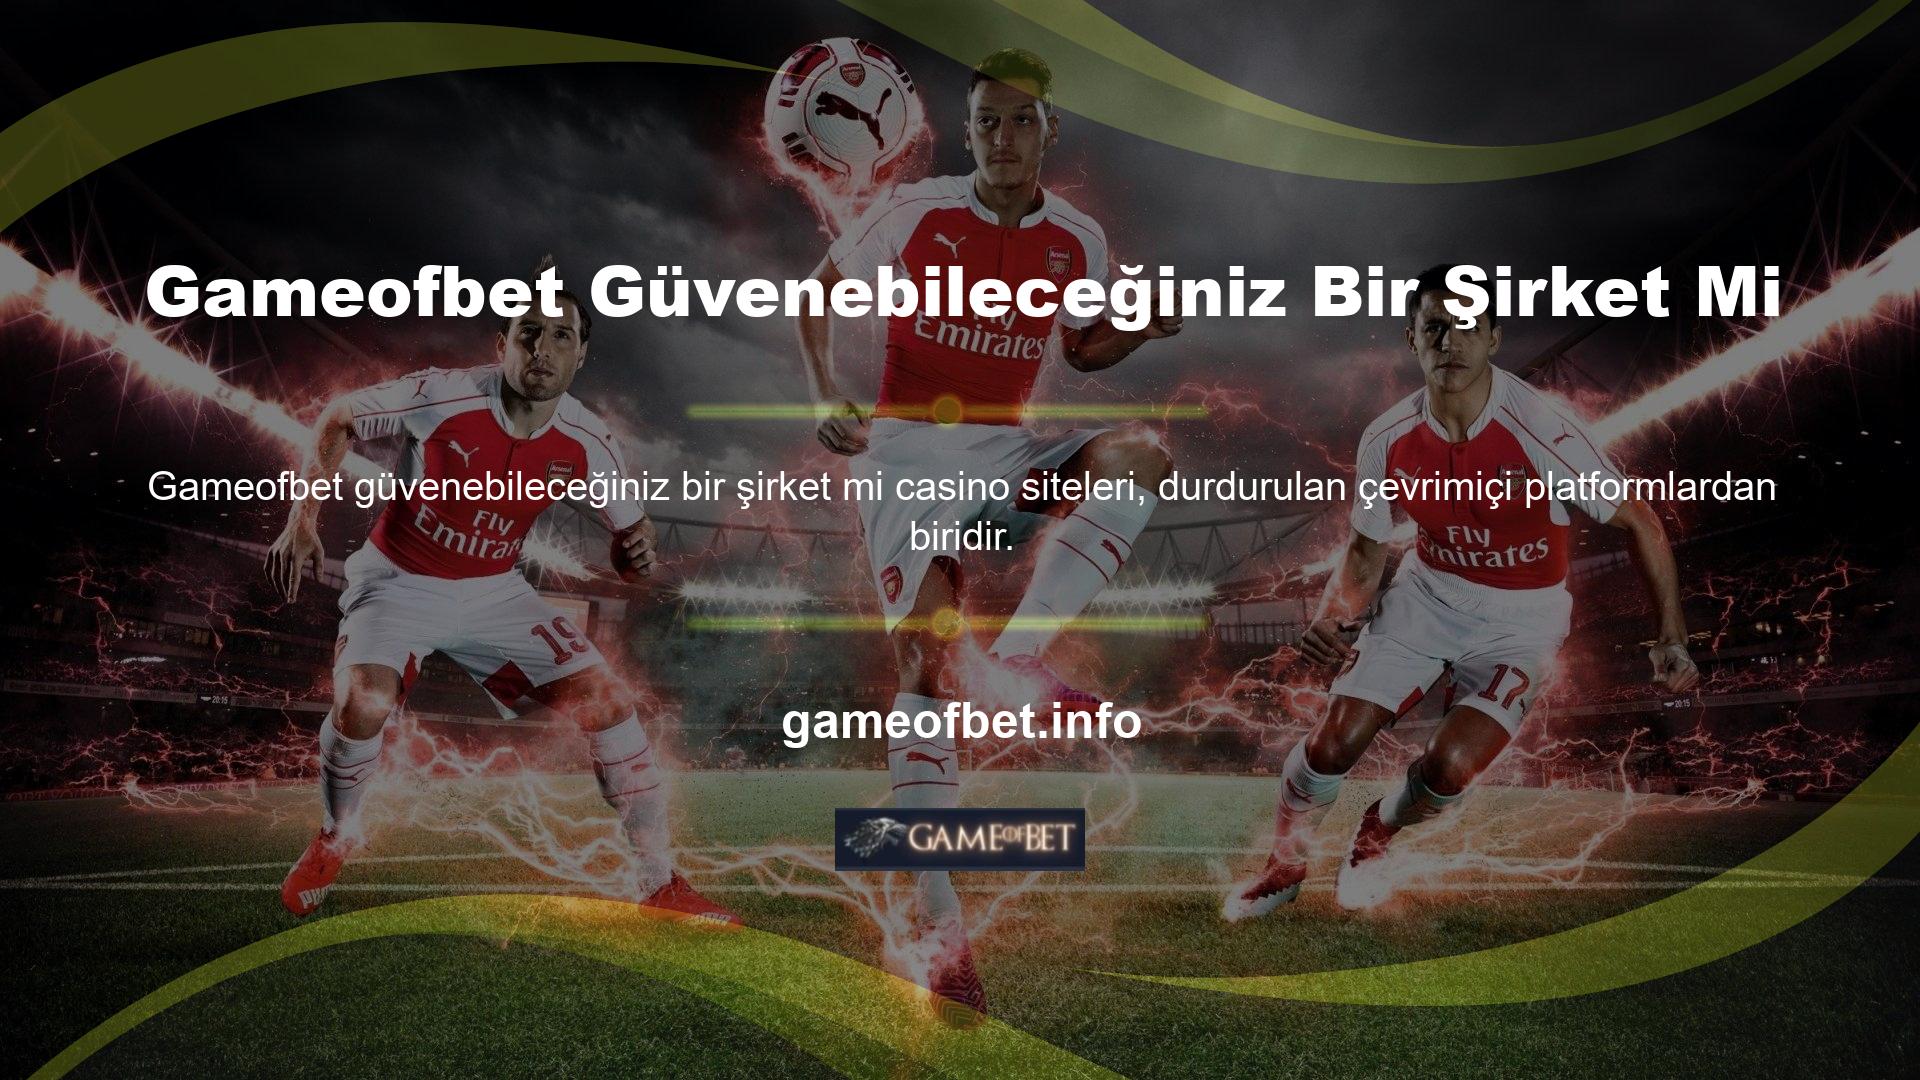 Türk bahisçilerin futbola yoğun bir ilgi duyması, canlı bahis seçeneklerini ilk kez futbolla sınırlandırmıştır